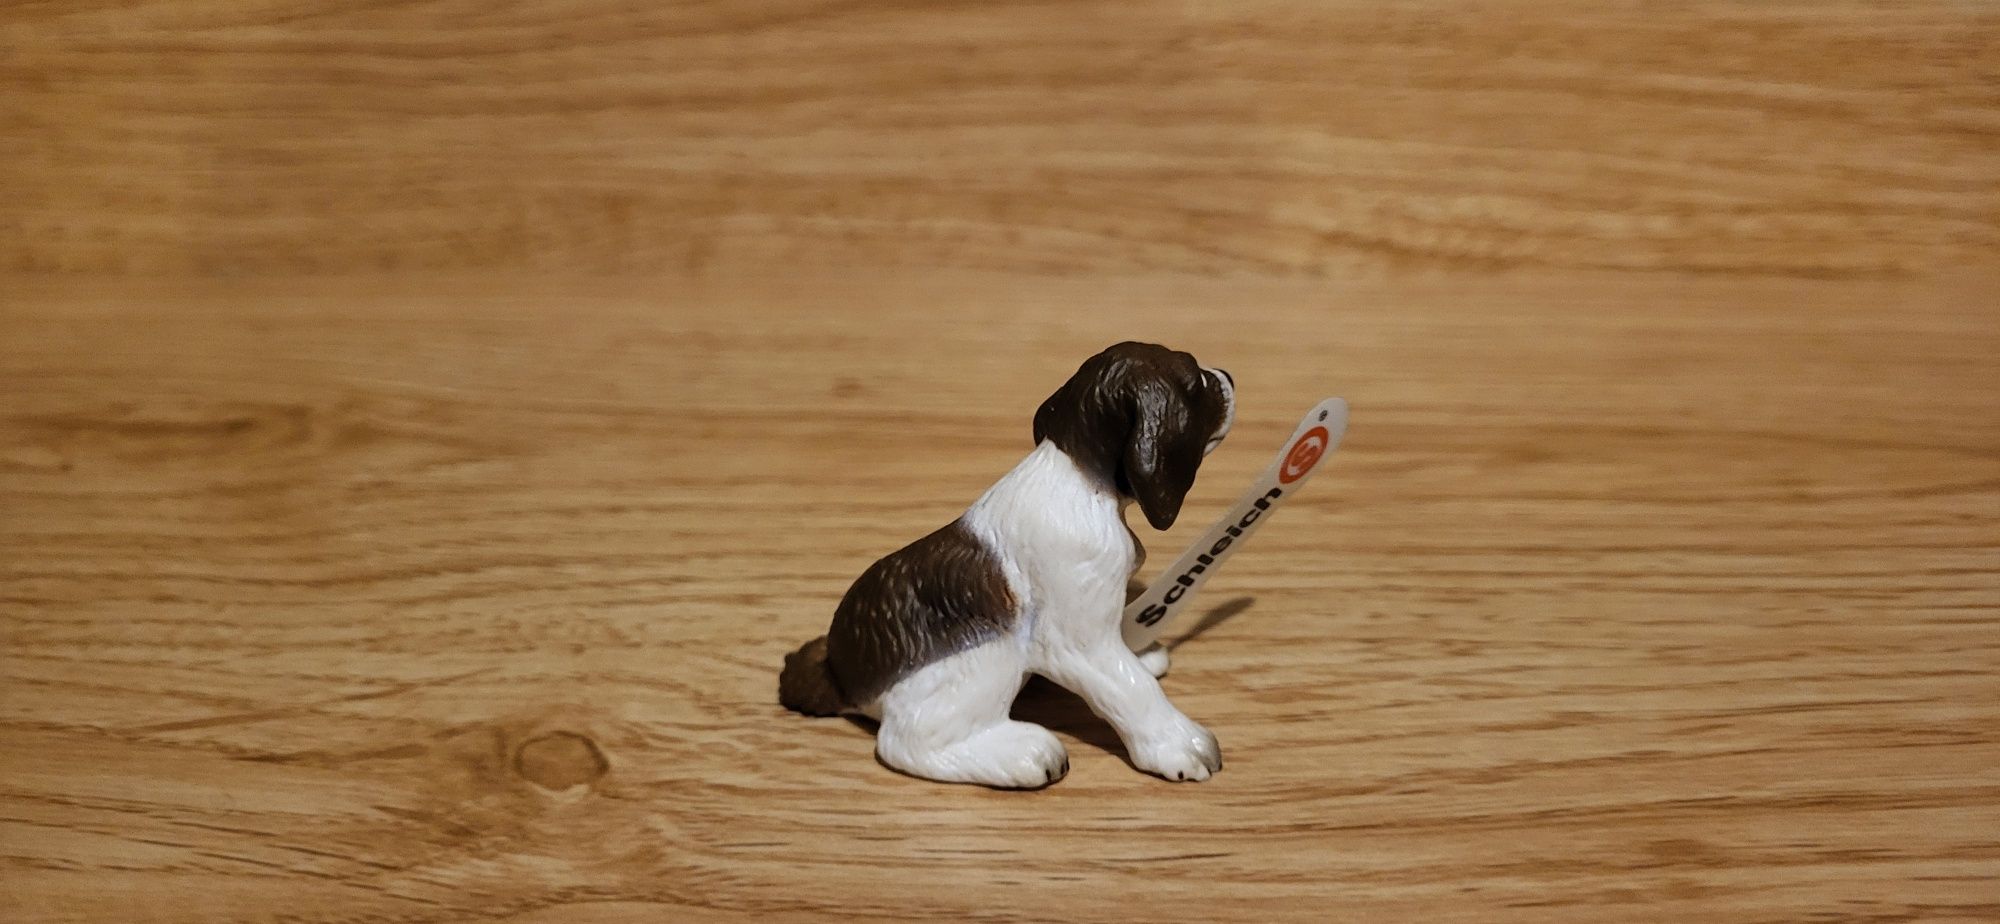 Schleich pies szczeniak siedzący figurka model wycofany z 2004 r.